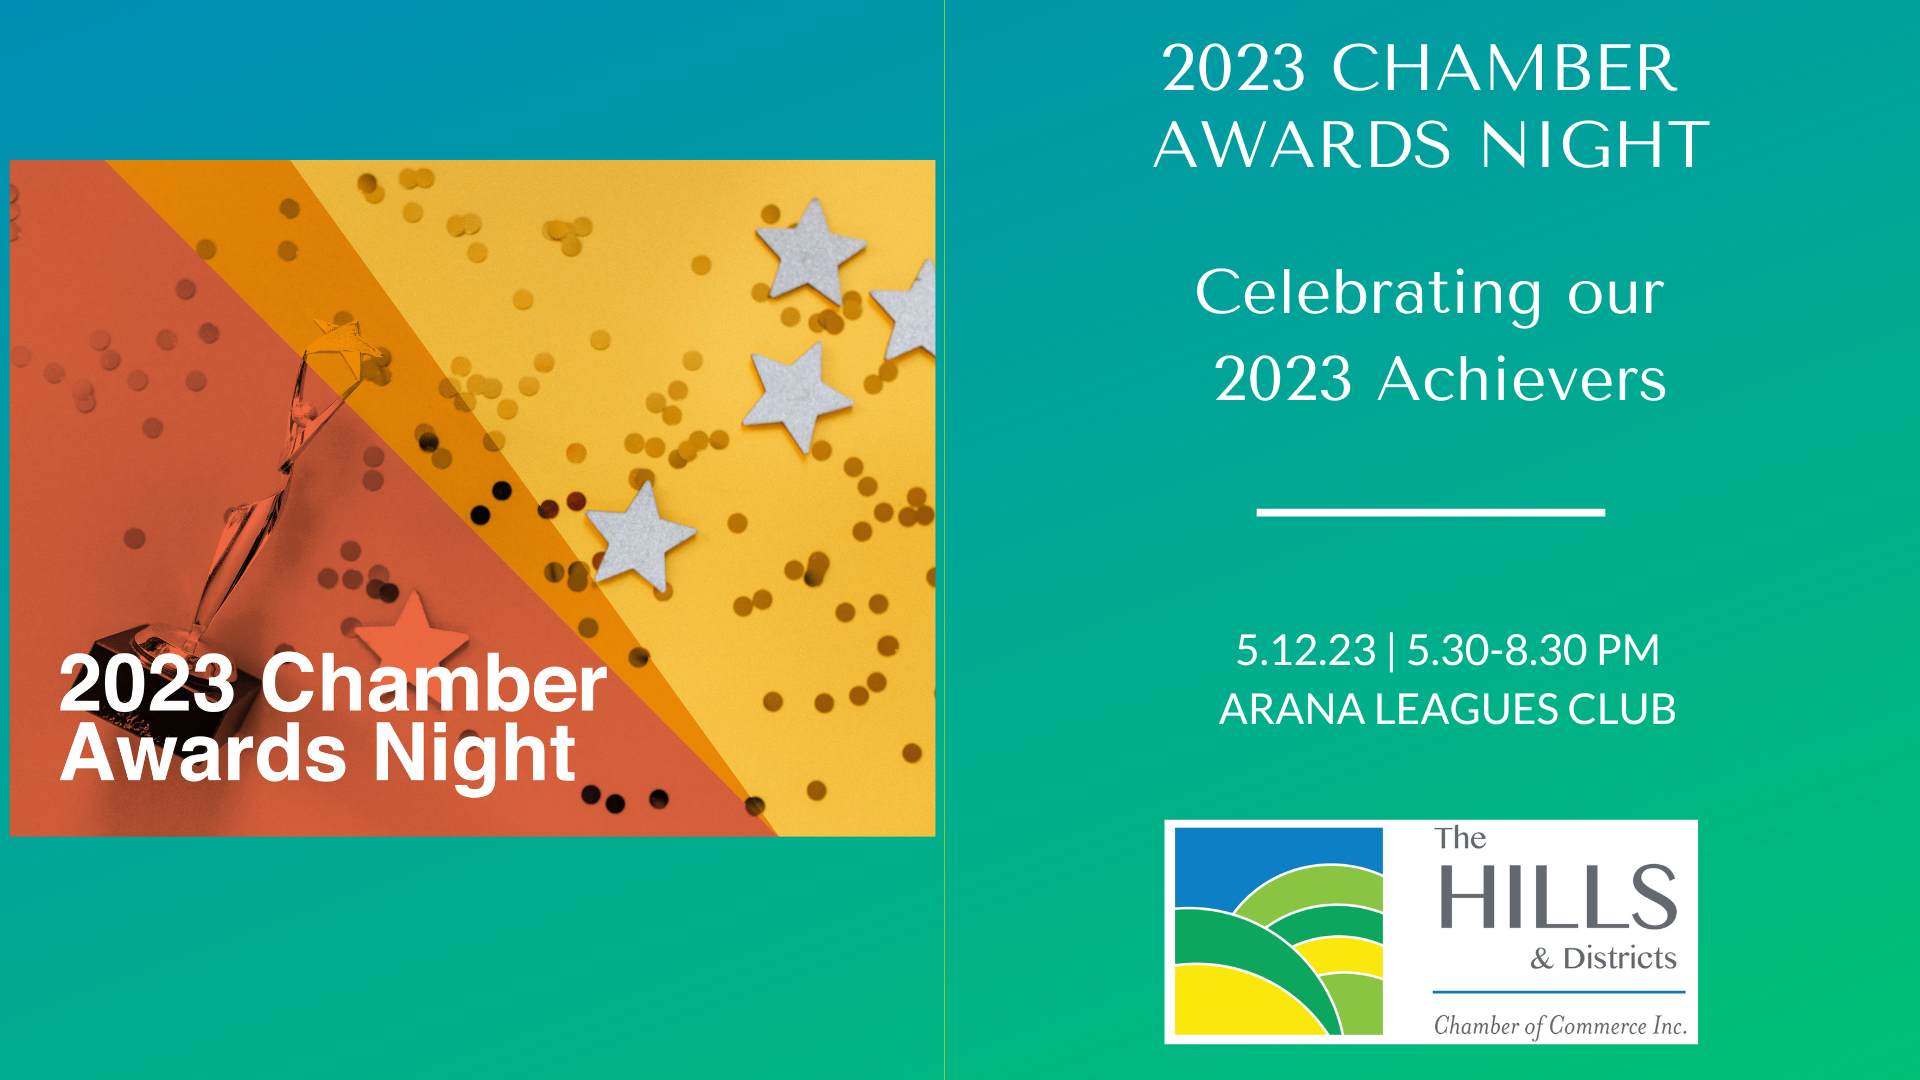 Awards Night » 2023 Chamber Achievers & Awards Night